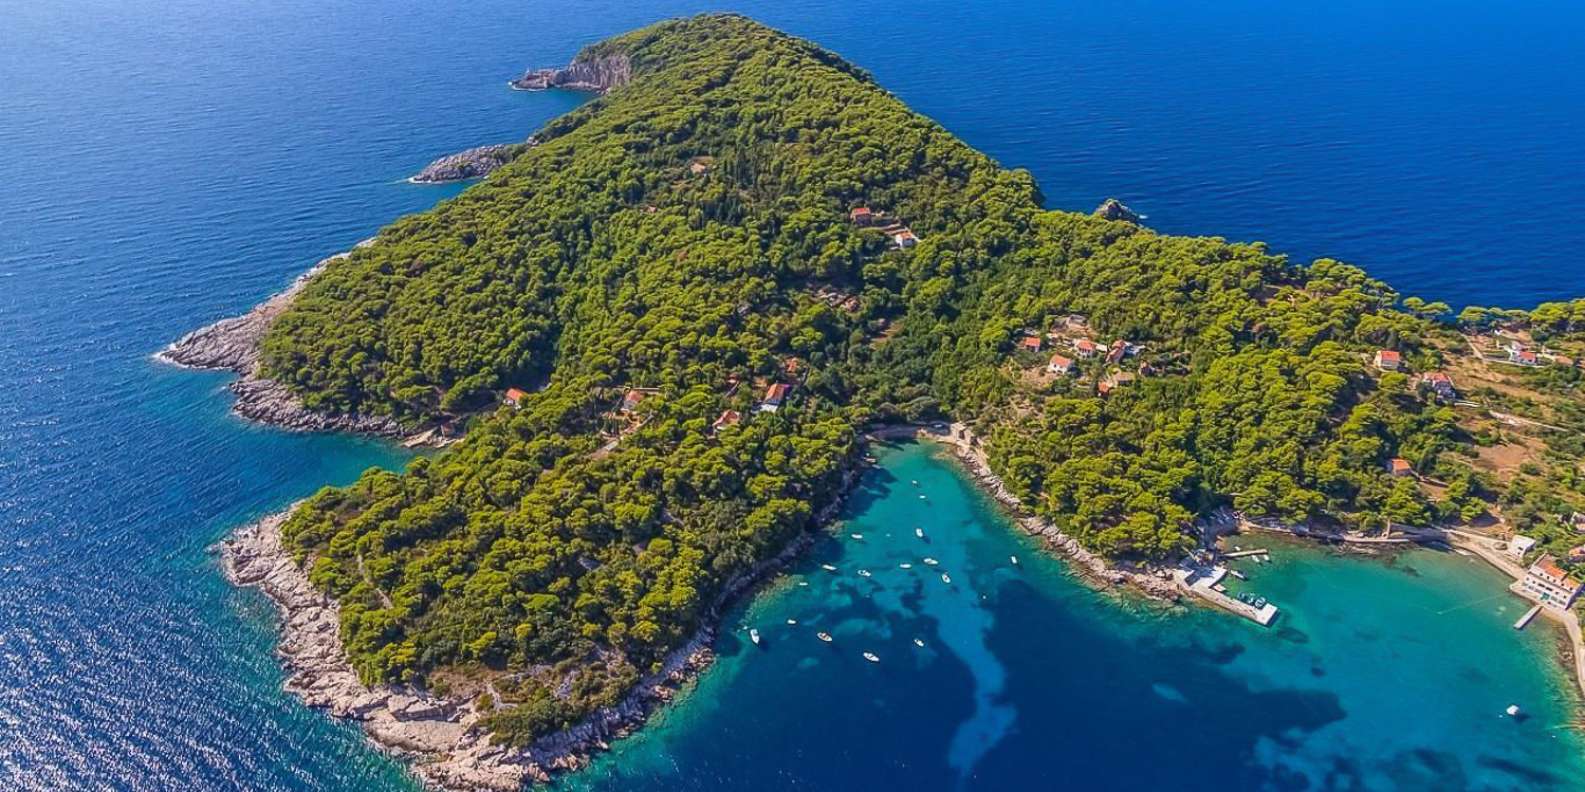 Las tranquilas islas Elafiti, cercanas a Dubrovnik